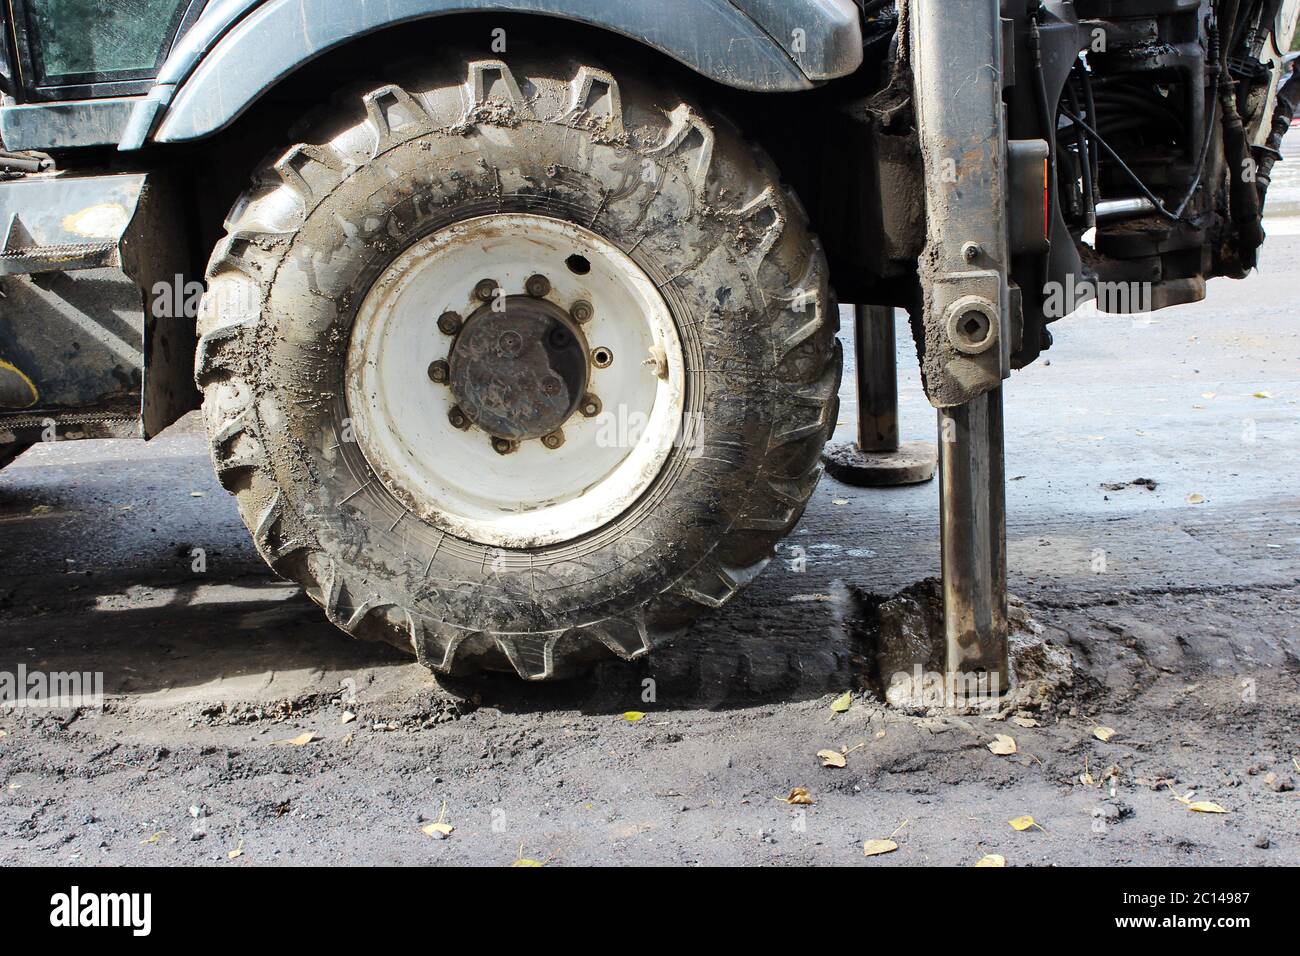 Traktor starke Stützen Stabilisierung Beine verlängert zu stabilisieren und stabilen Zustand beim Graben der Erde unter der Straße Reparatur. Stockfoto